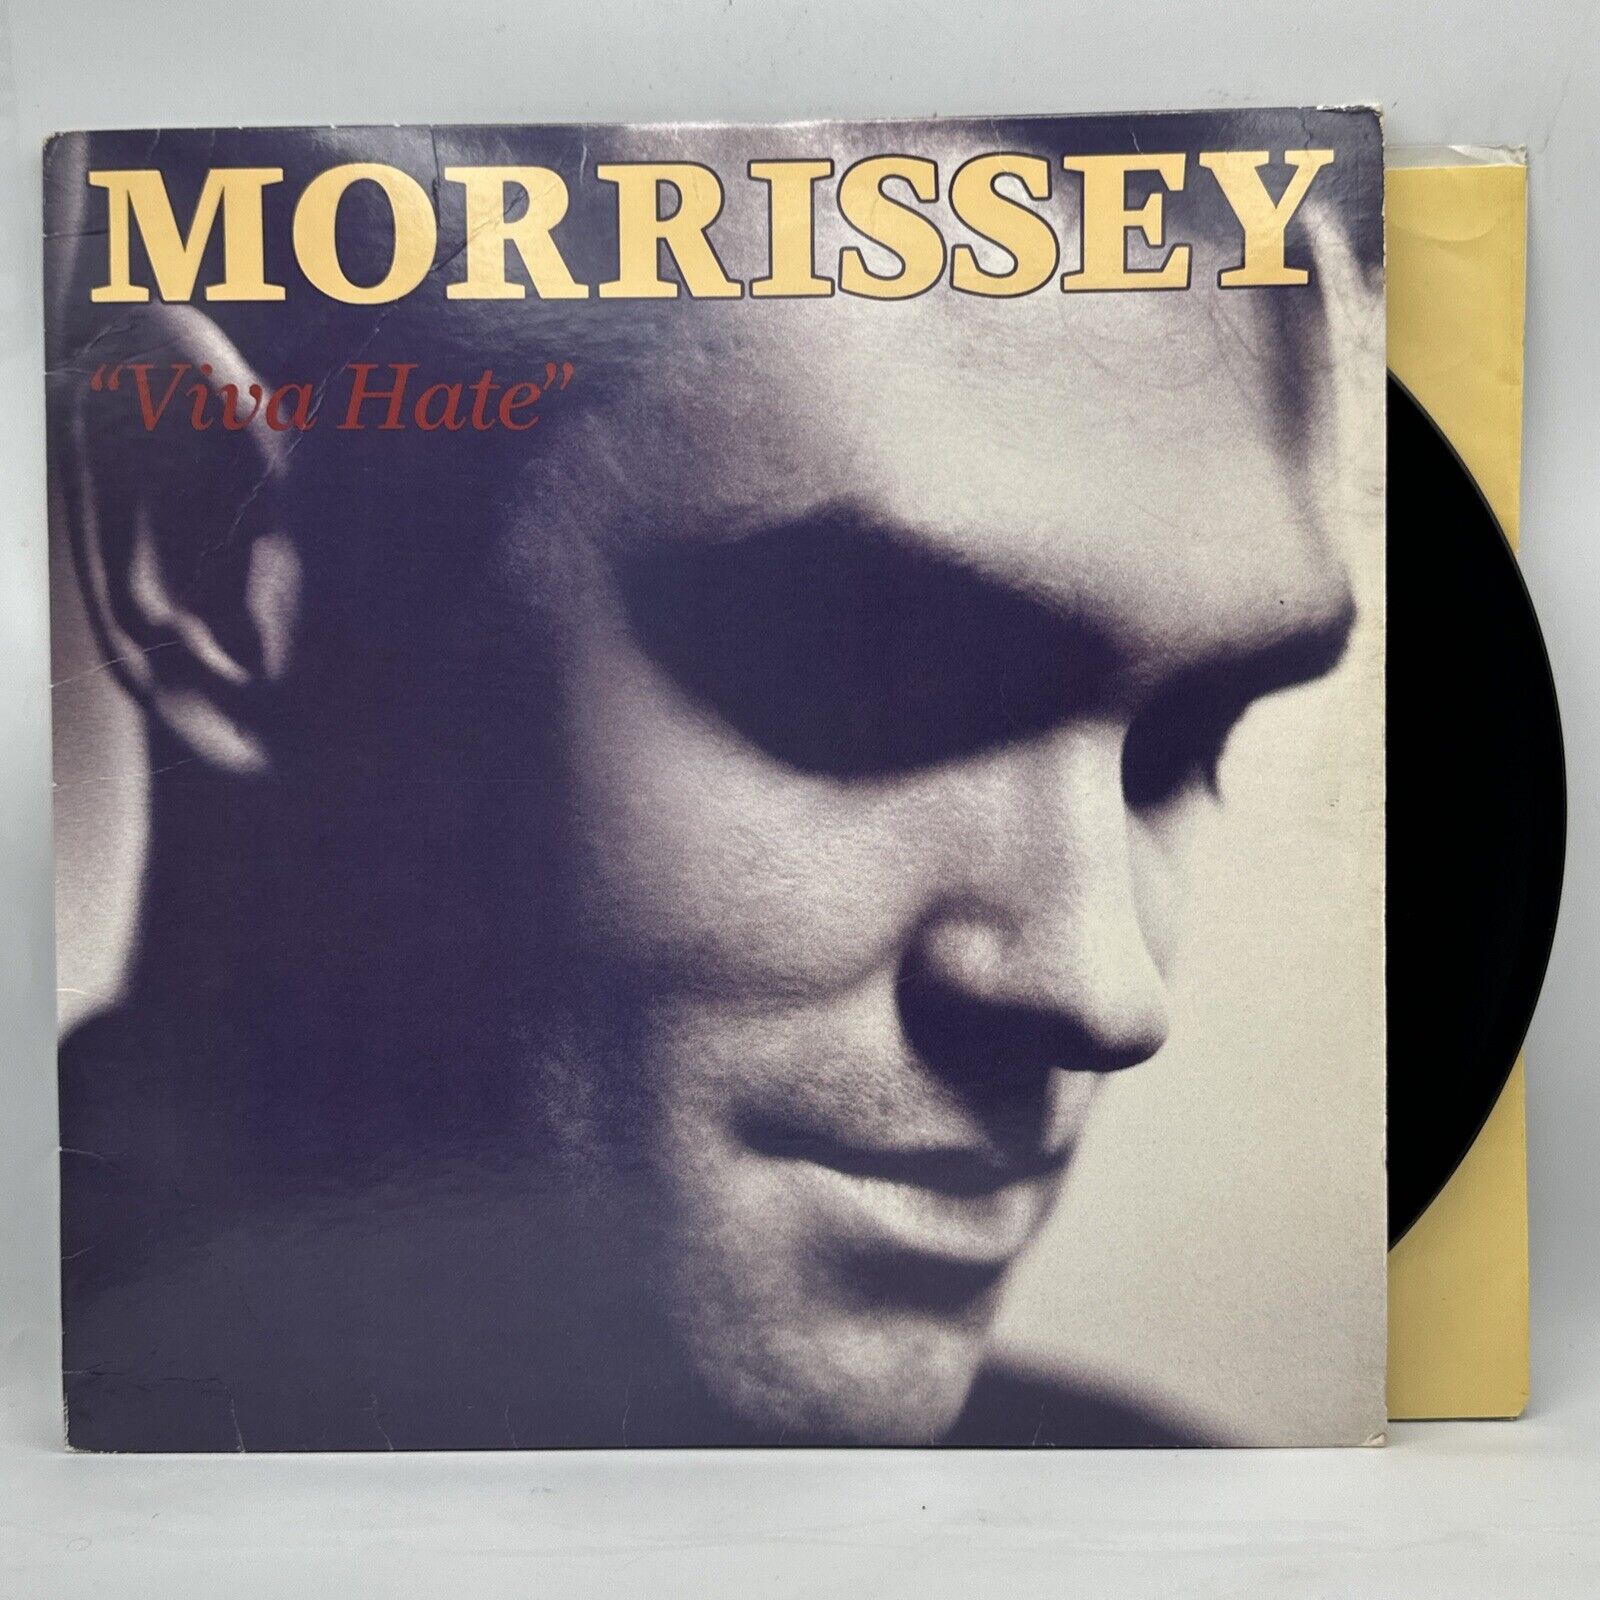 Morrissey - Viva Hate - 1988 US 1st Press Album VG++ Ultrasonic Clean